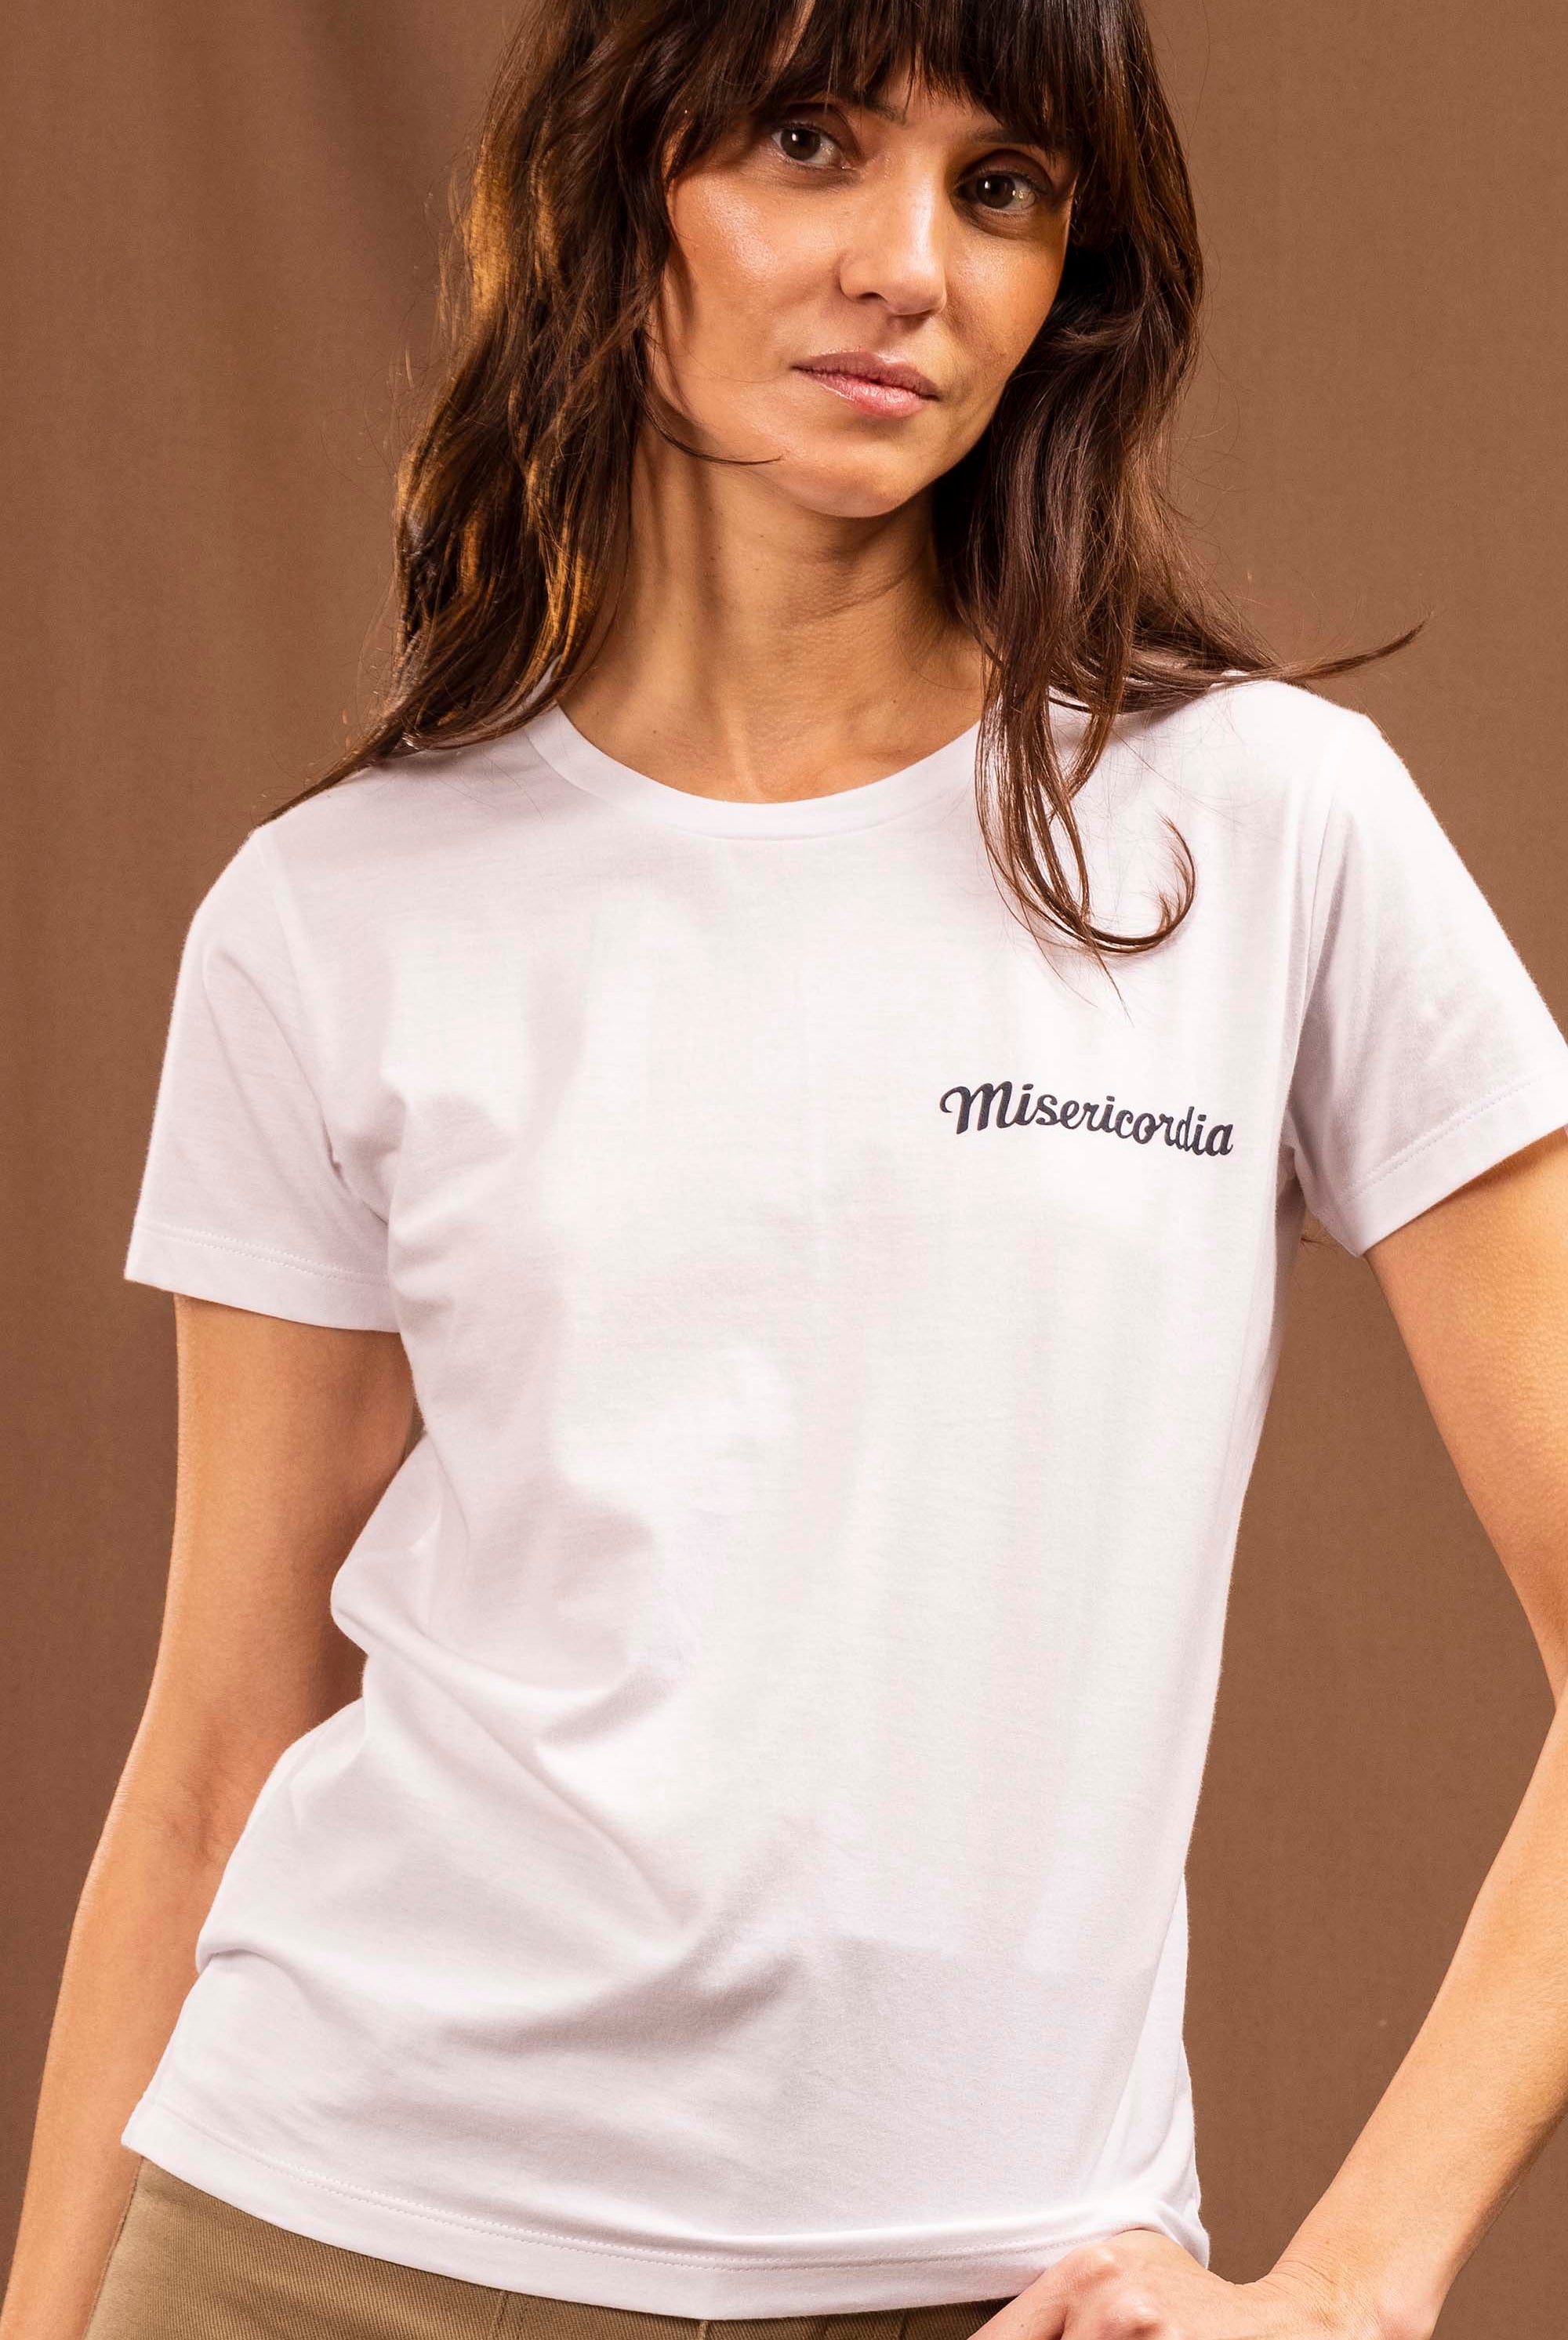 T-Shirt Medallon Misericordia Pecho Blanc allure féminine et sportswear pour un look de ville